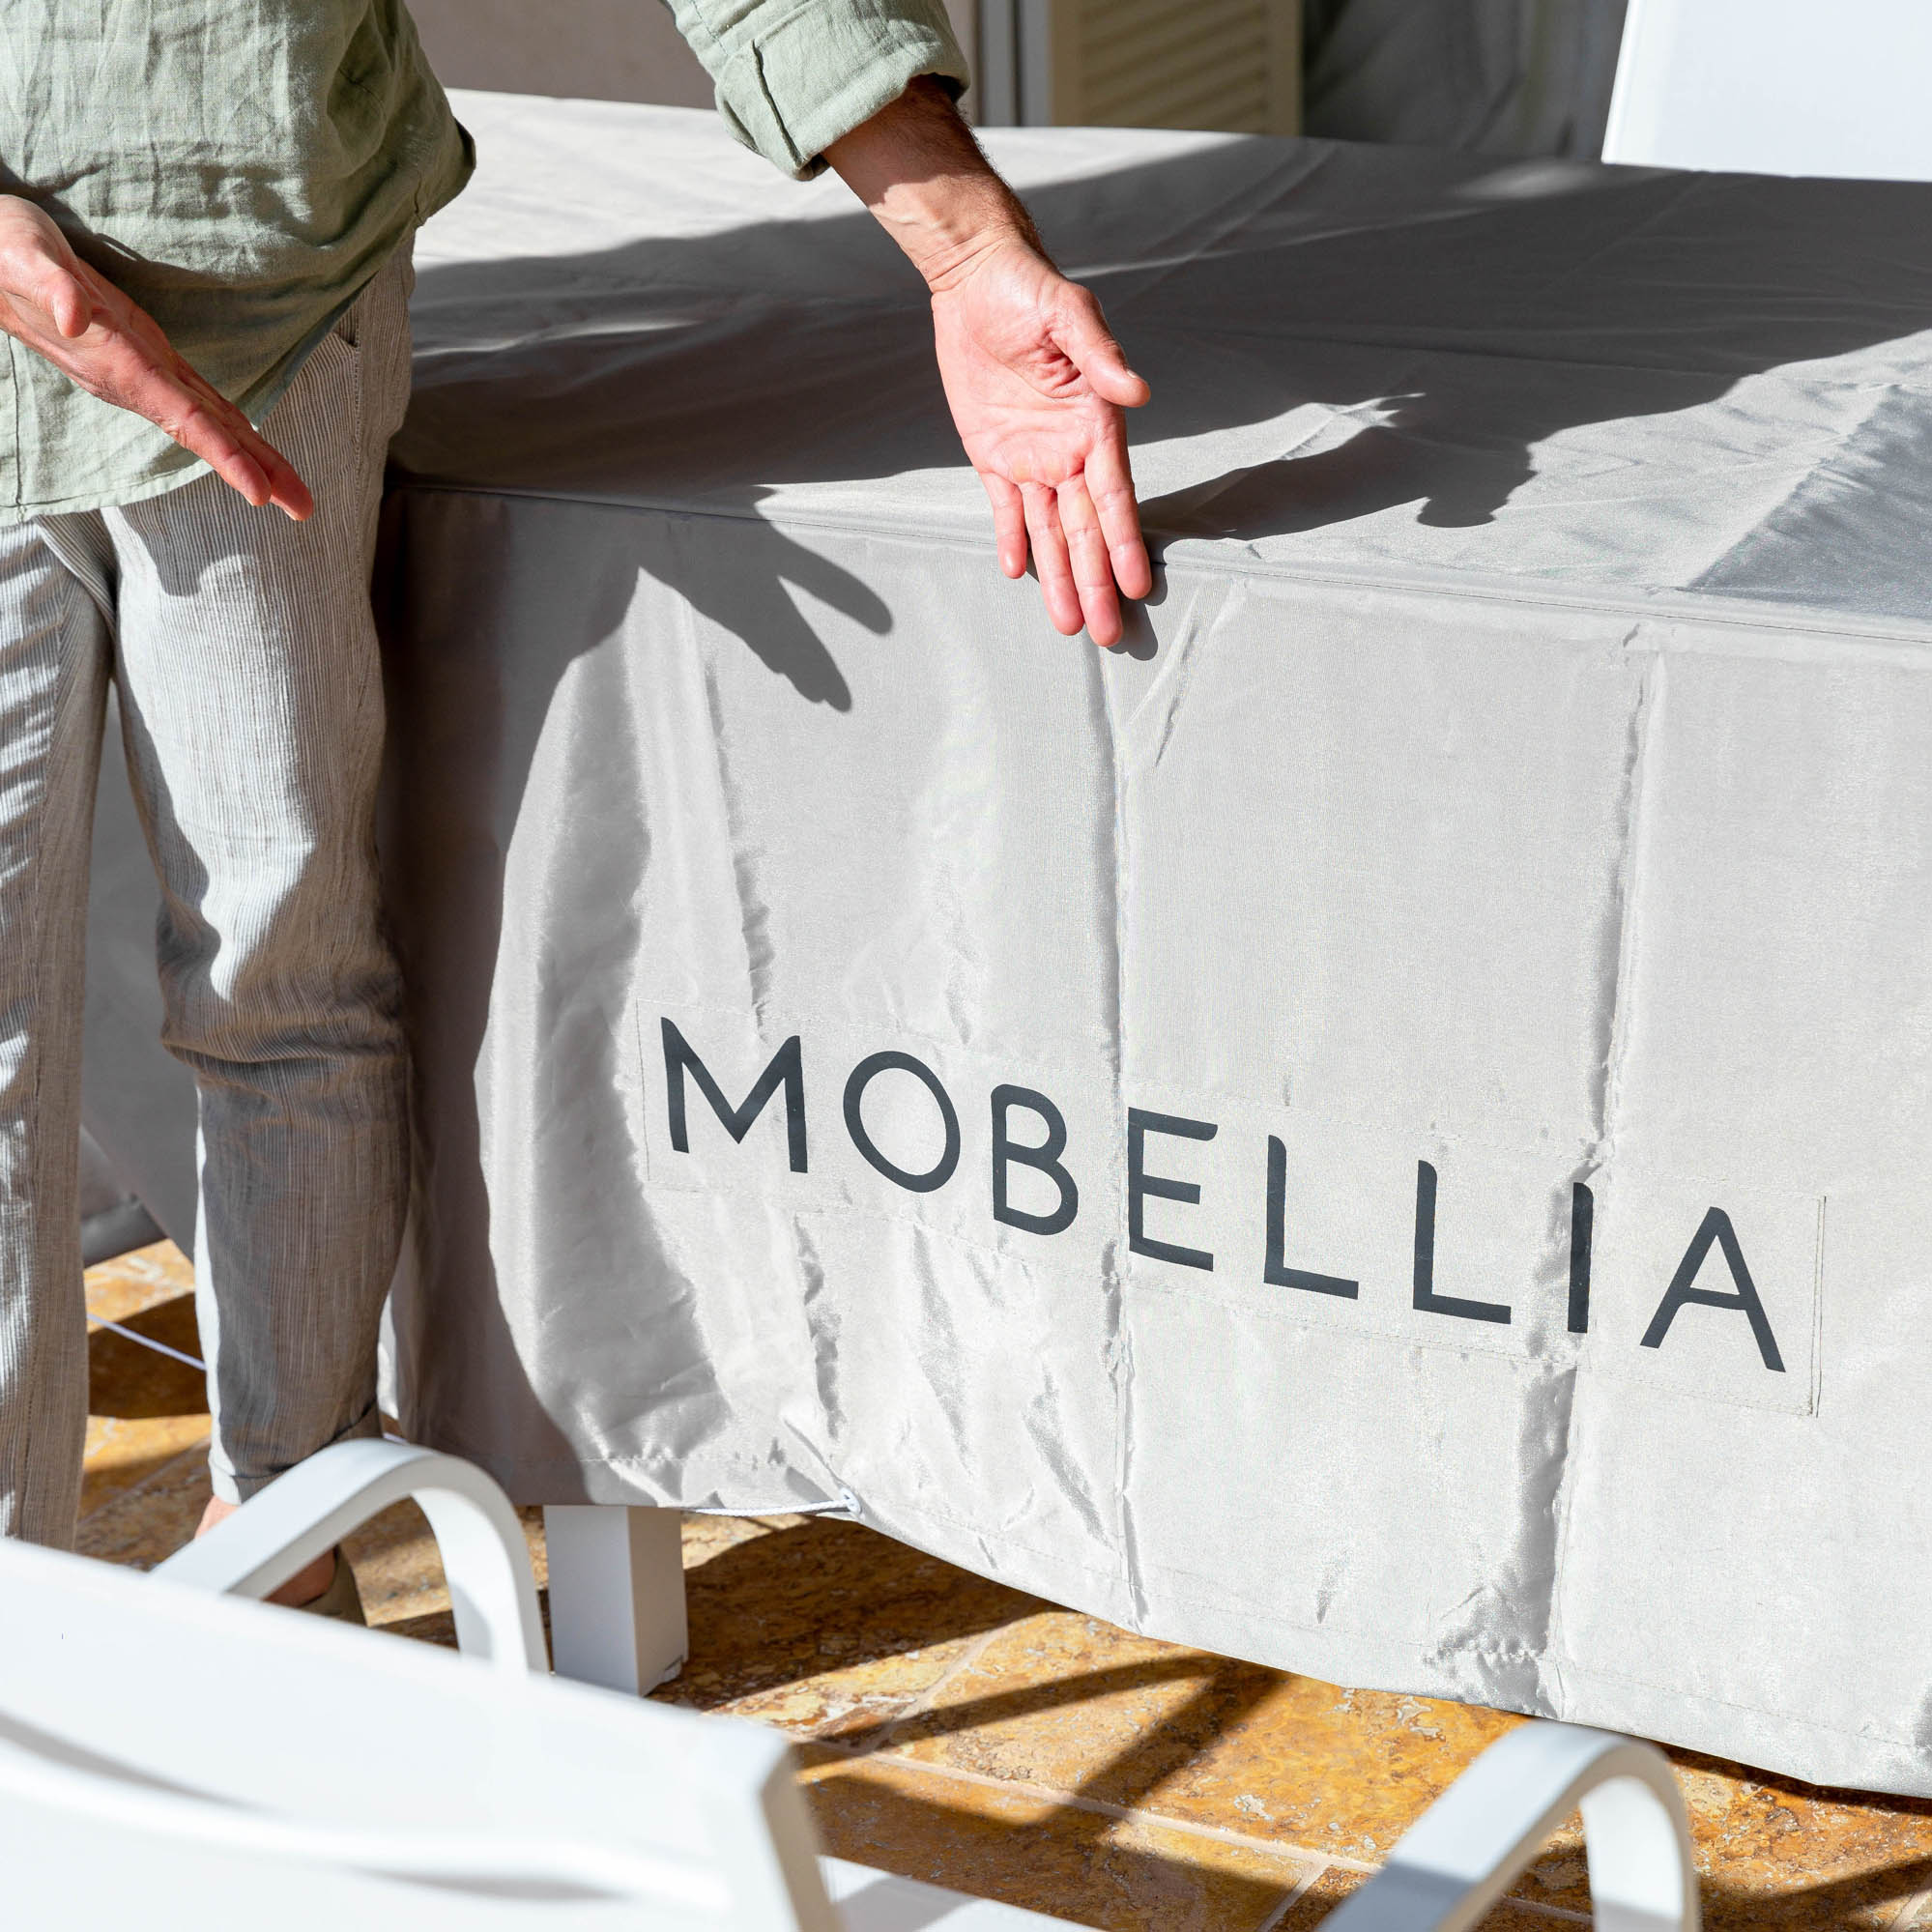 Housse de protection imperméable pour table ronde - test Mobellia